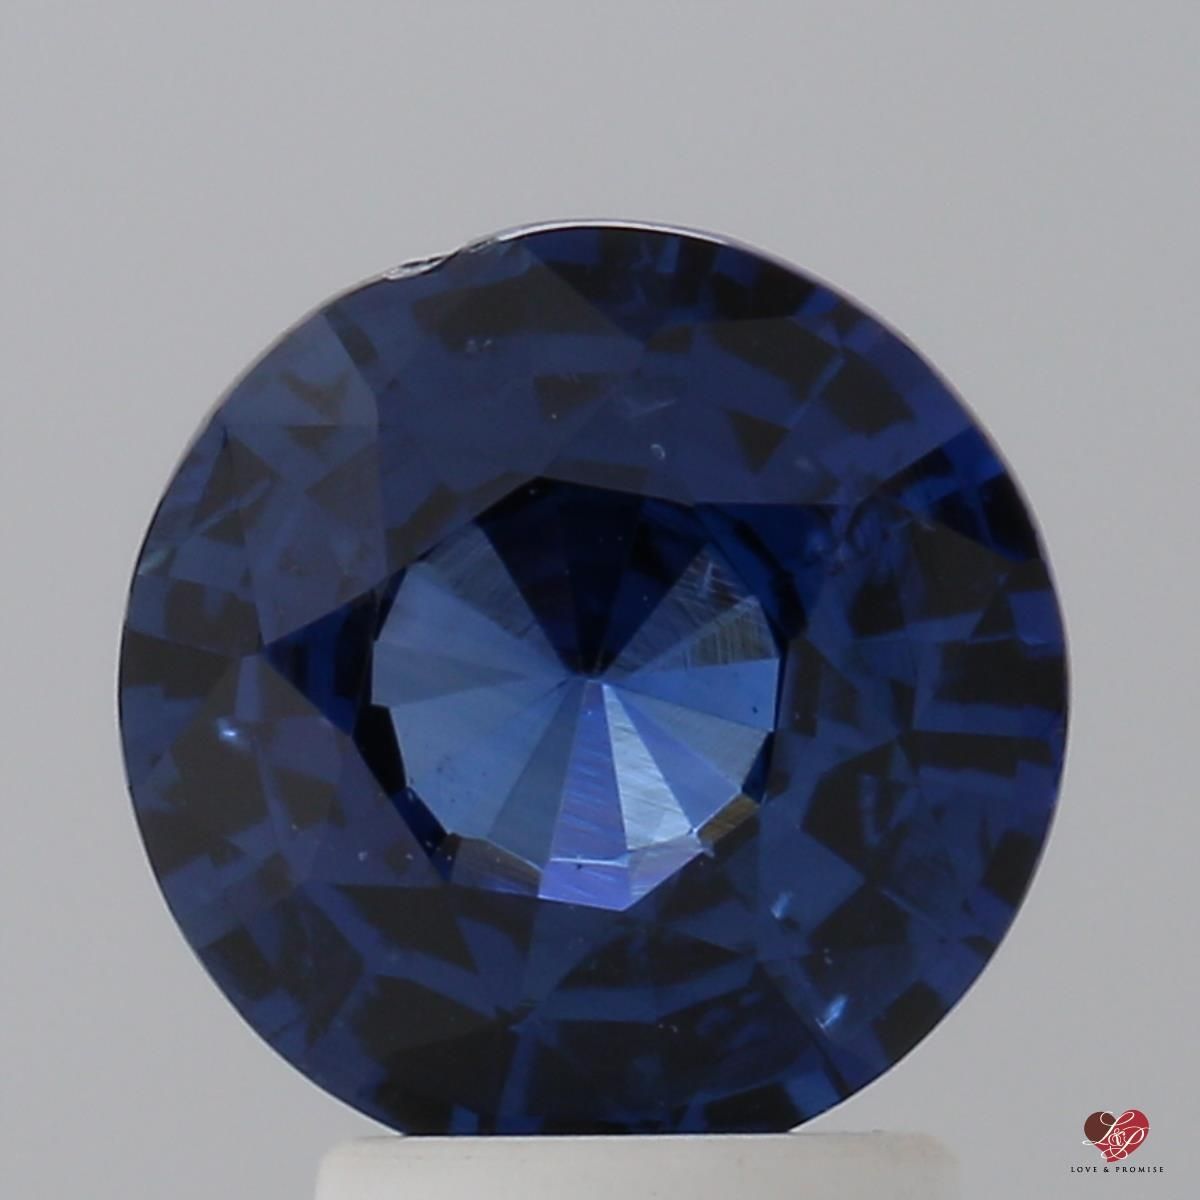 2.70cts Round Medium Rich Midnight Blue Sapphire